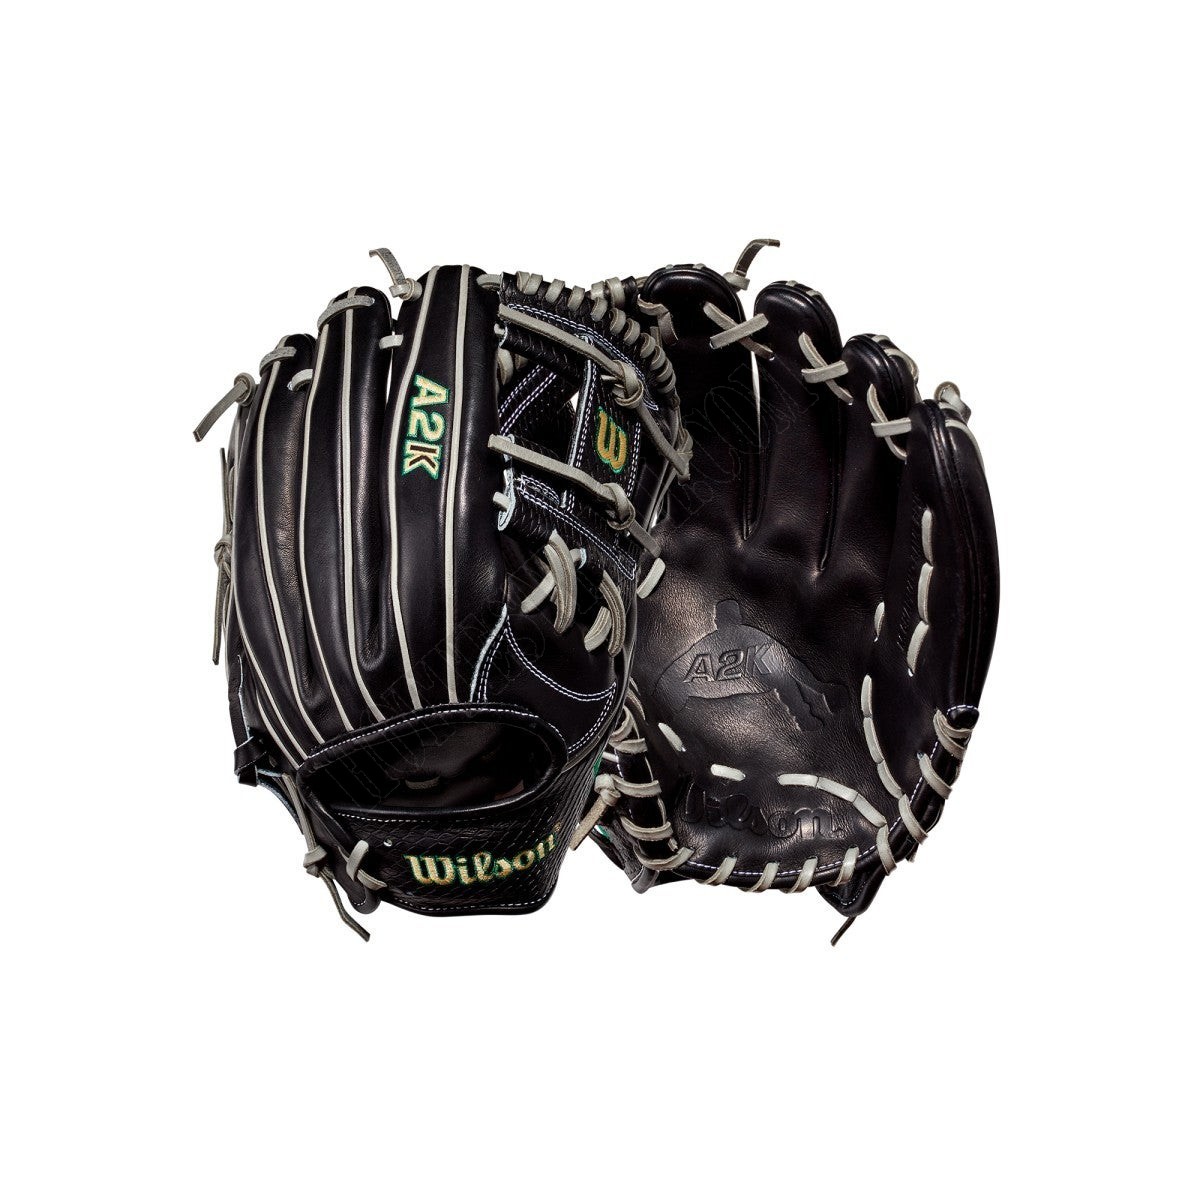 2021 A2K MC26 GM 11.75" Baseball Infield Glove ● Wilson Promotions - 2021 A2K MC26 GM 11.75" Baseball Infield Glove ● Wilson Promotions